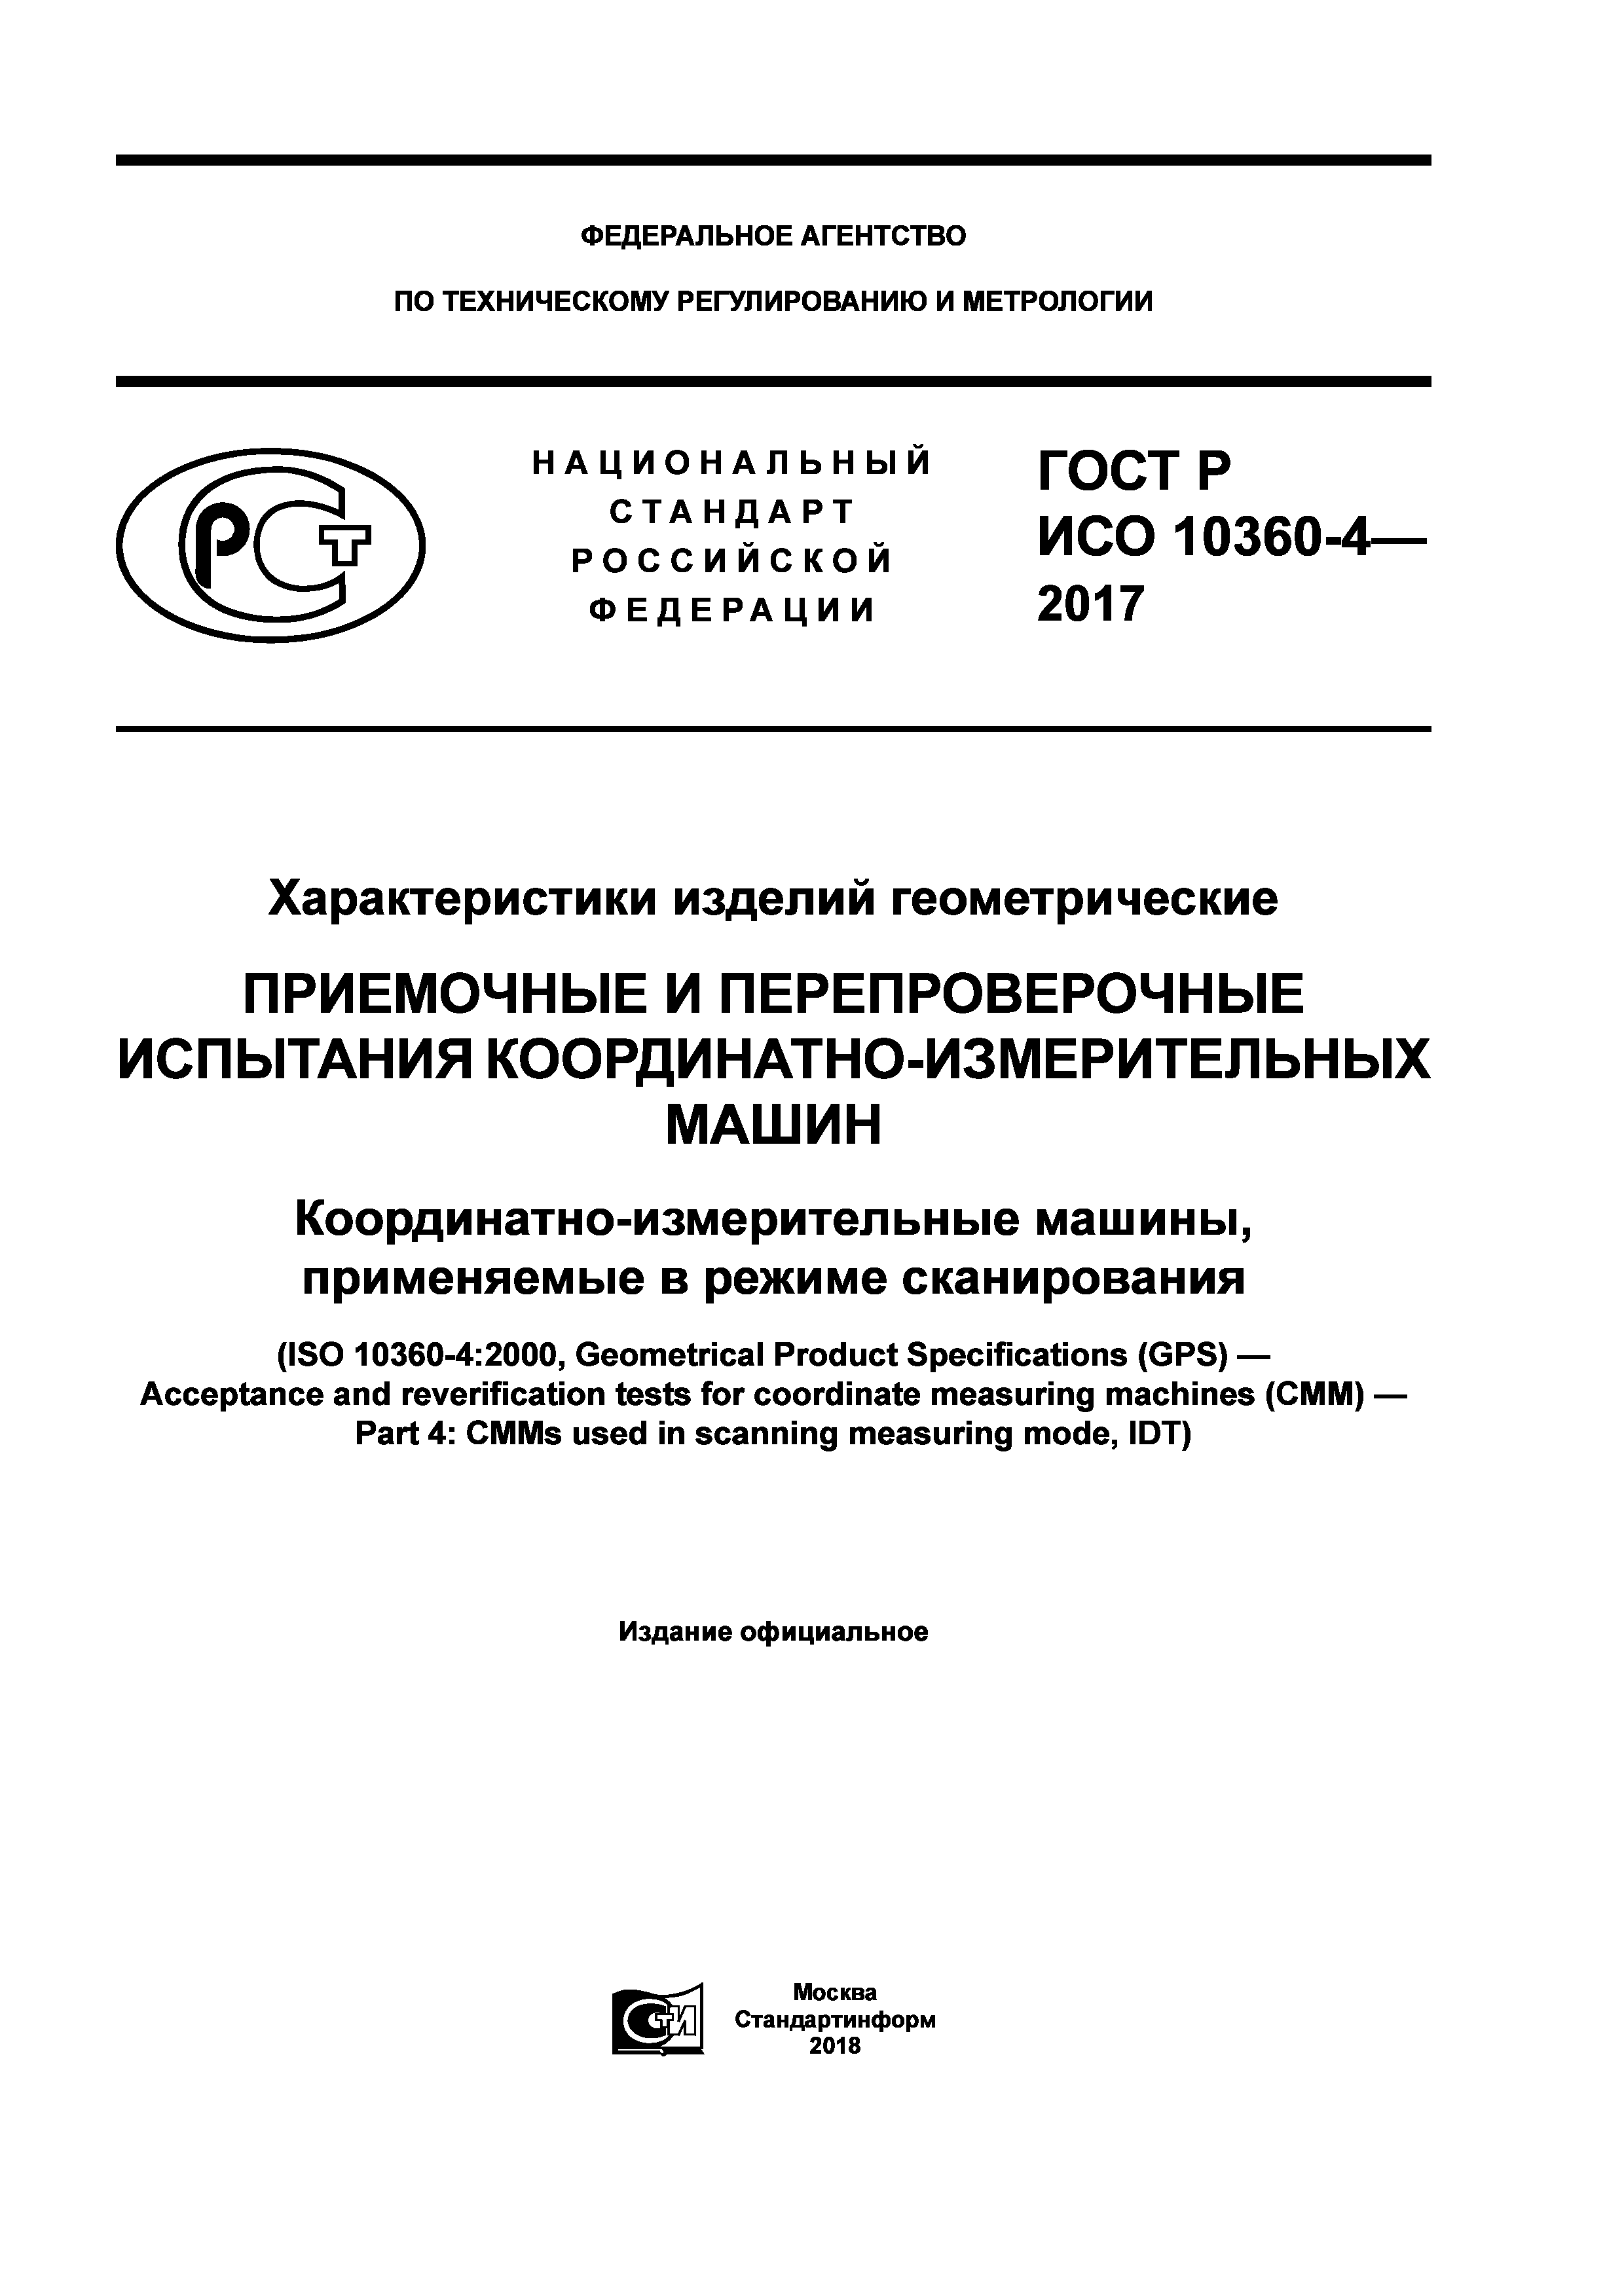 ГОСТ Р ИСО 10360-4-2017